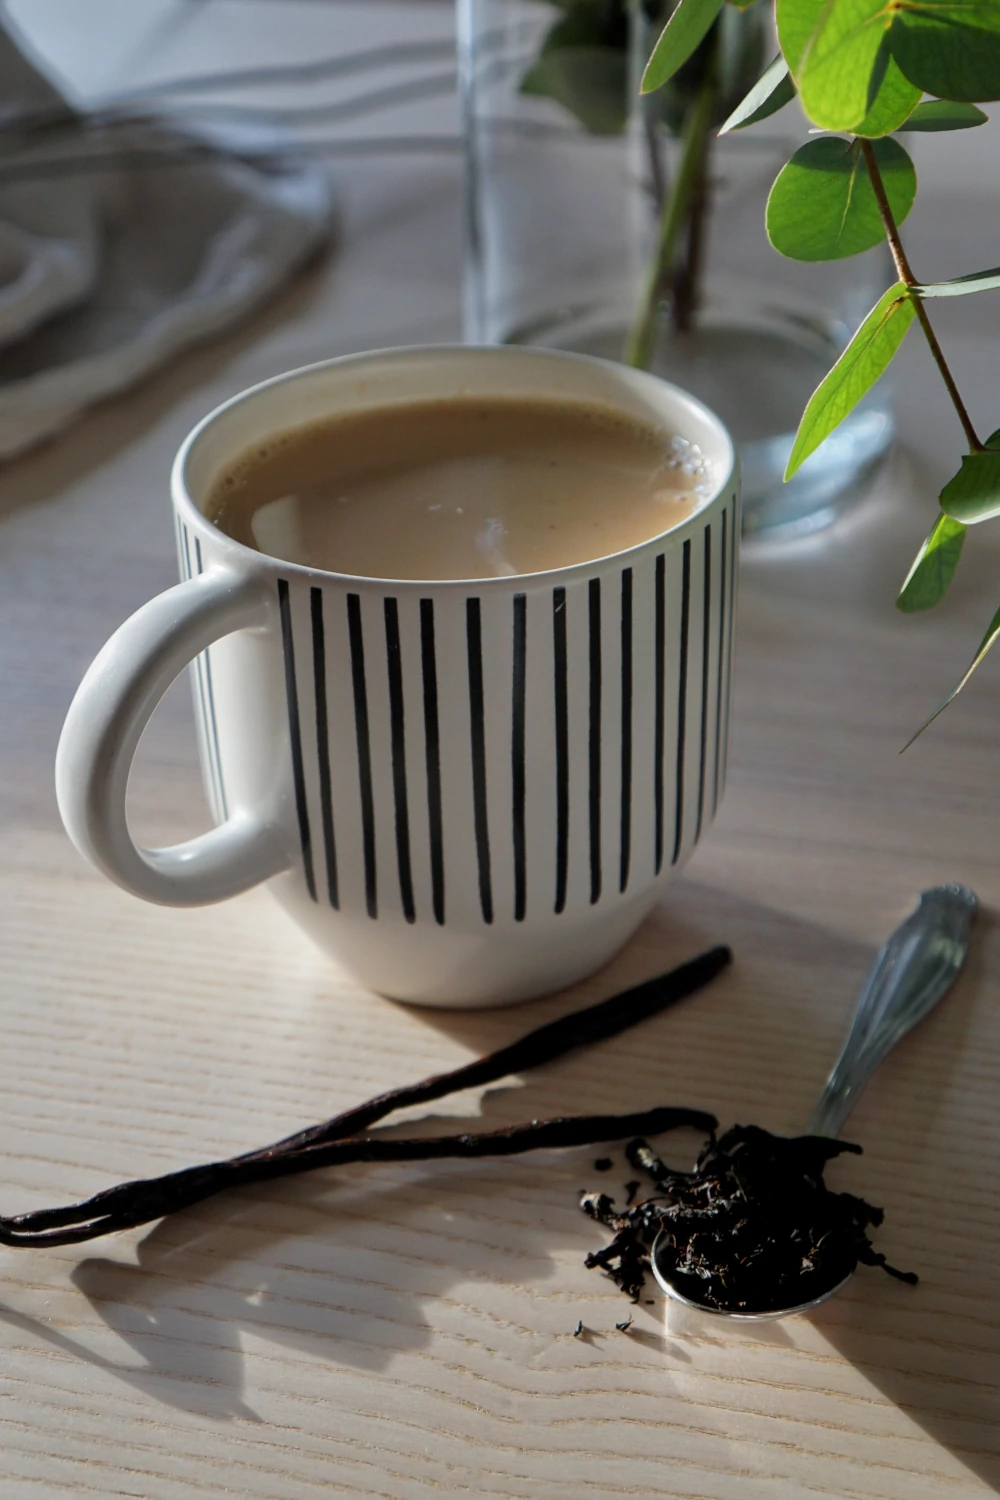 herbata pijana była z głównymi składnikami takimi jak czarna herbata